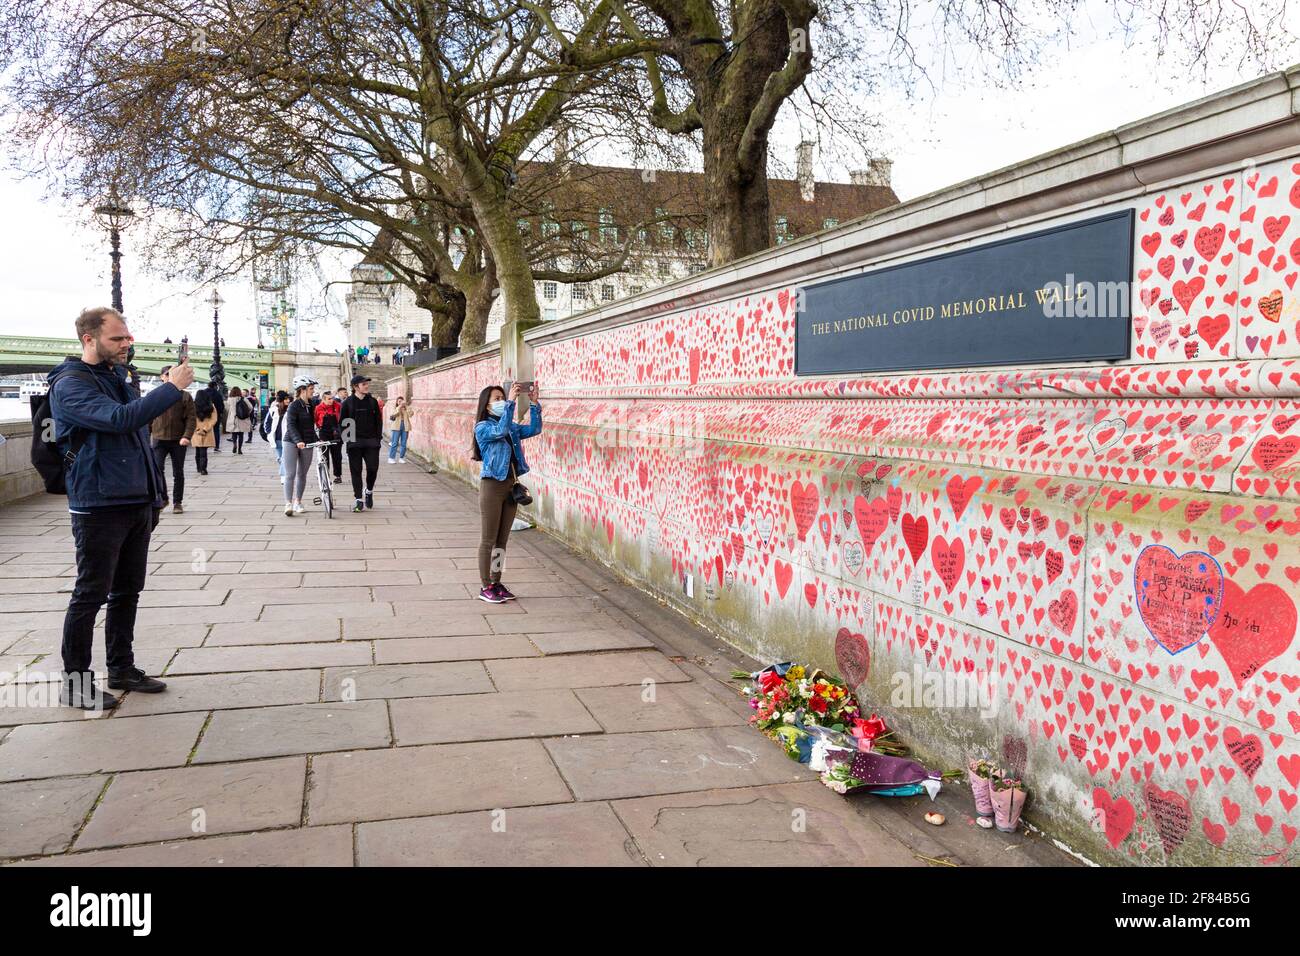 11 avril 2021, Londres, Royaume-Uni - le mur commémoratif national COVID le long de la rive sud a rempli de cœur pour commémorer les morts pendant la pandémie du coronavirus Banque D'Images